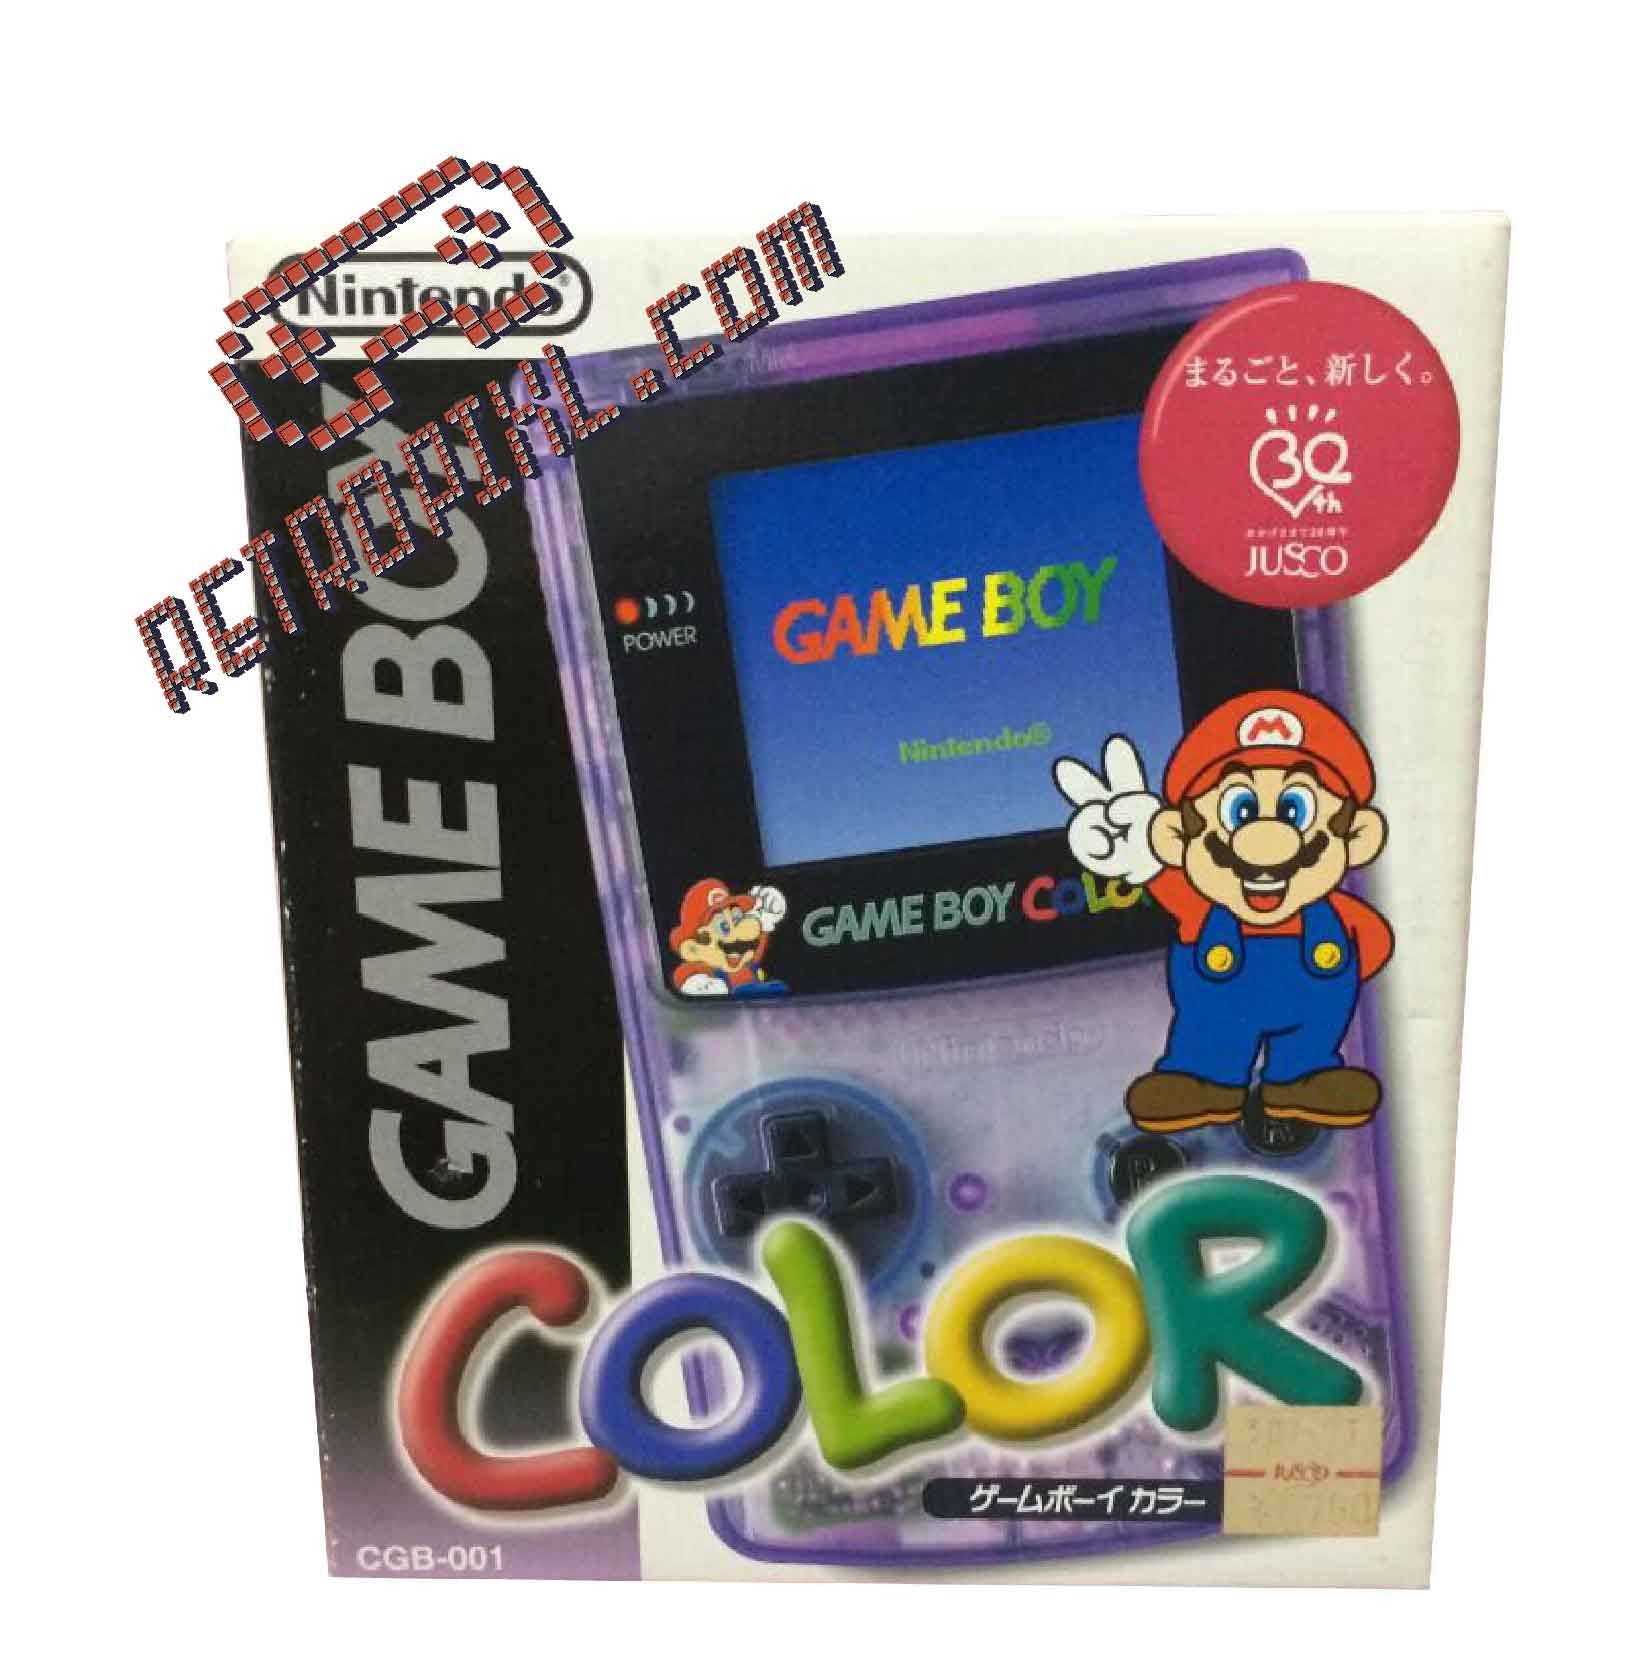 1 Nintendo Gameboy Color - game boy color edizione limited edition